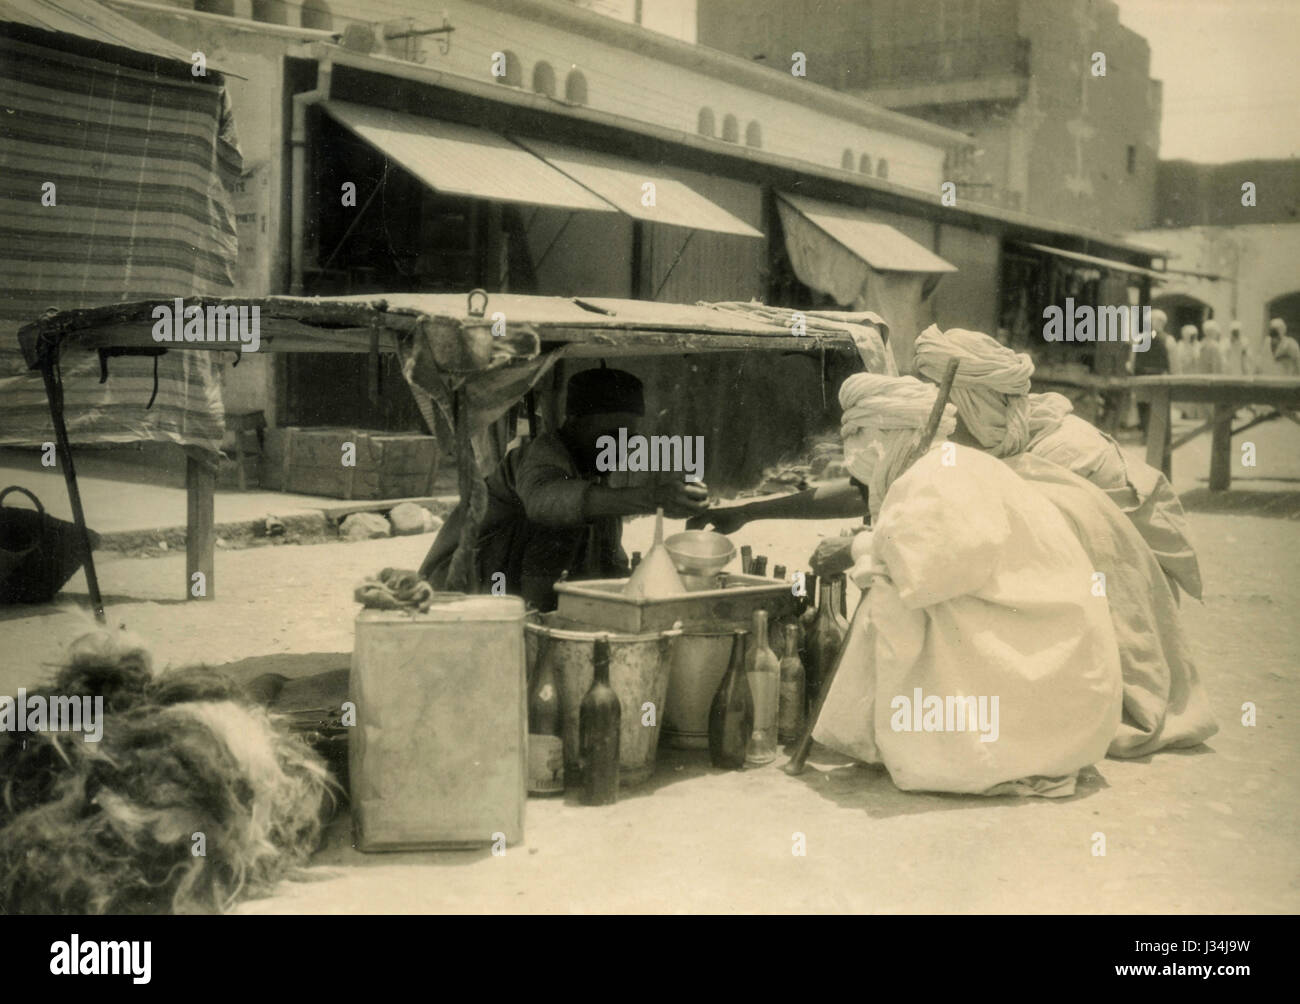 Lemon drink and palm wine seller, Biskra, Algeria Stock Photo